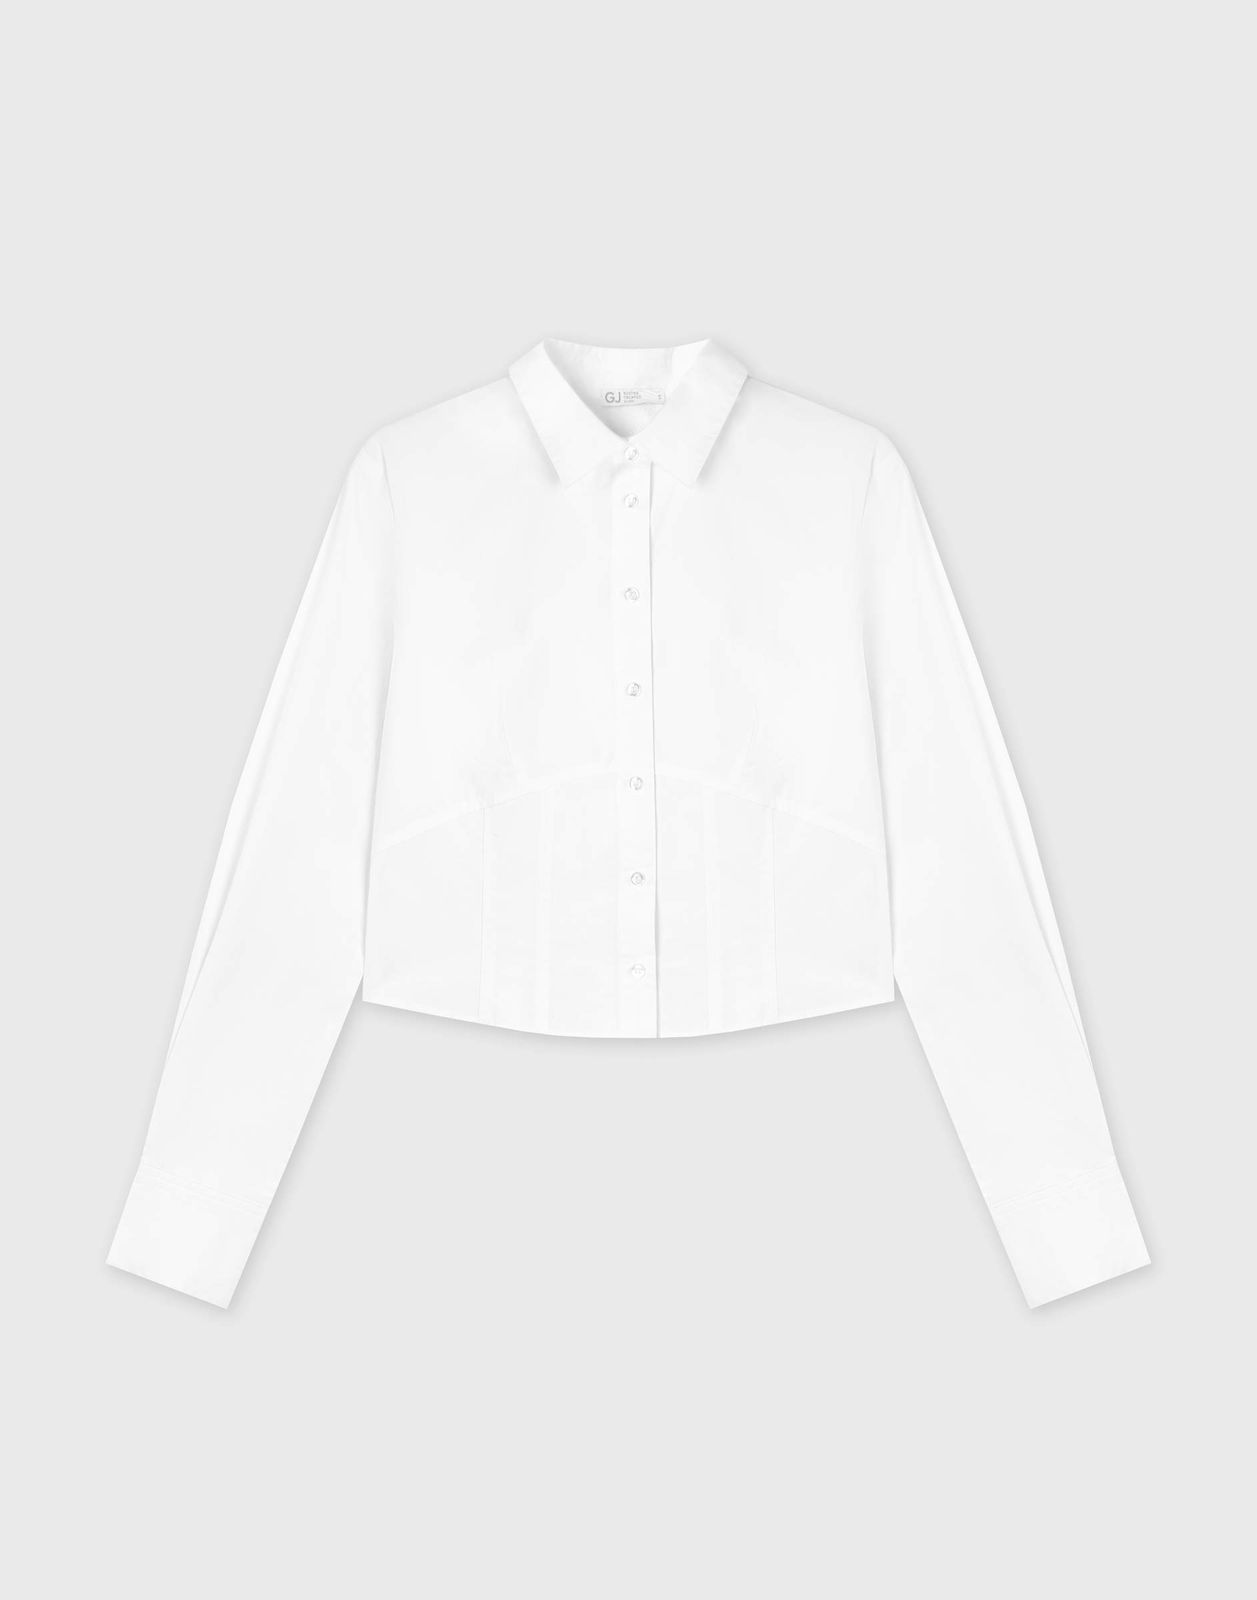 Рубашка женская Gloria Jeans GWT003232 белый XS/164